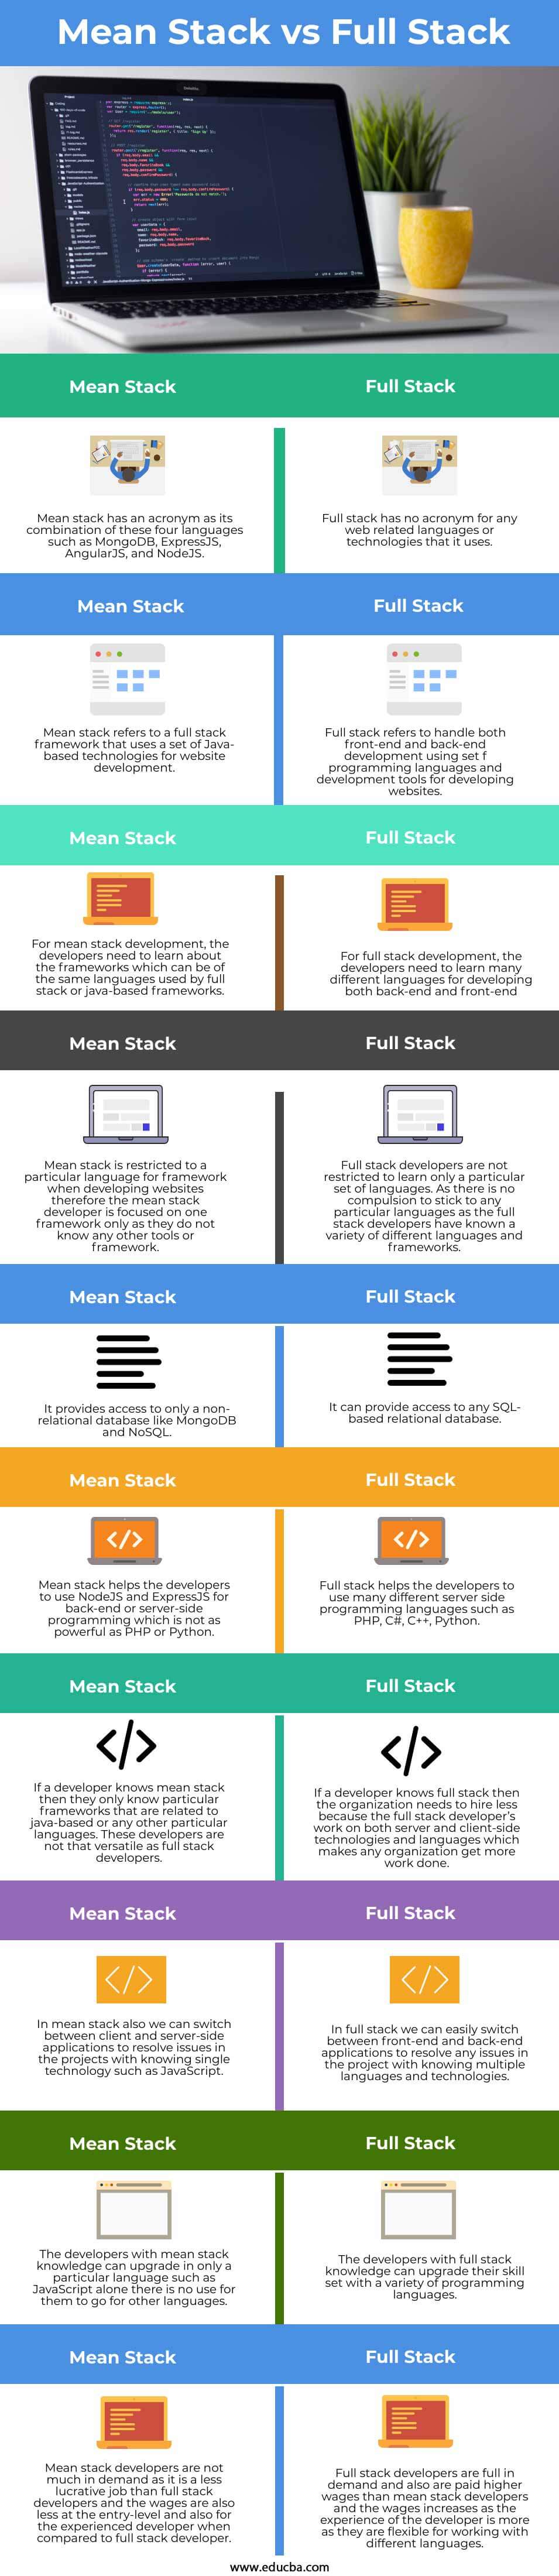 Mean-Stack-vs-Full-Stack-info